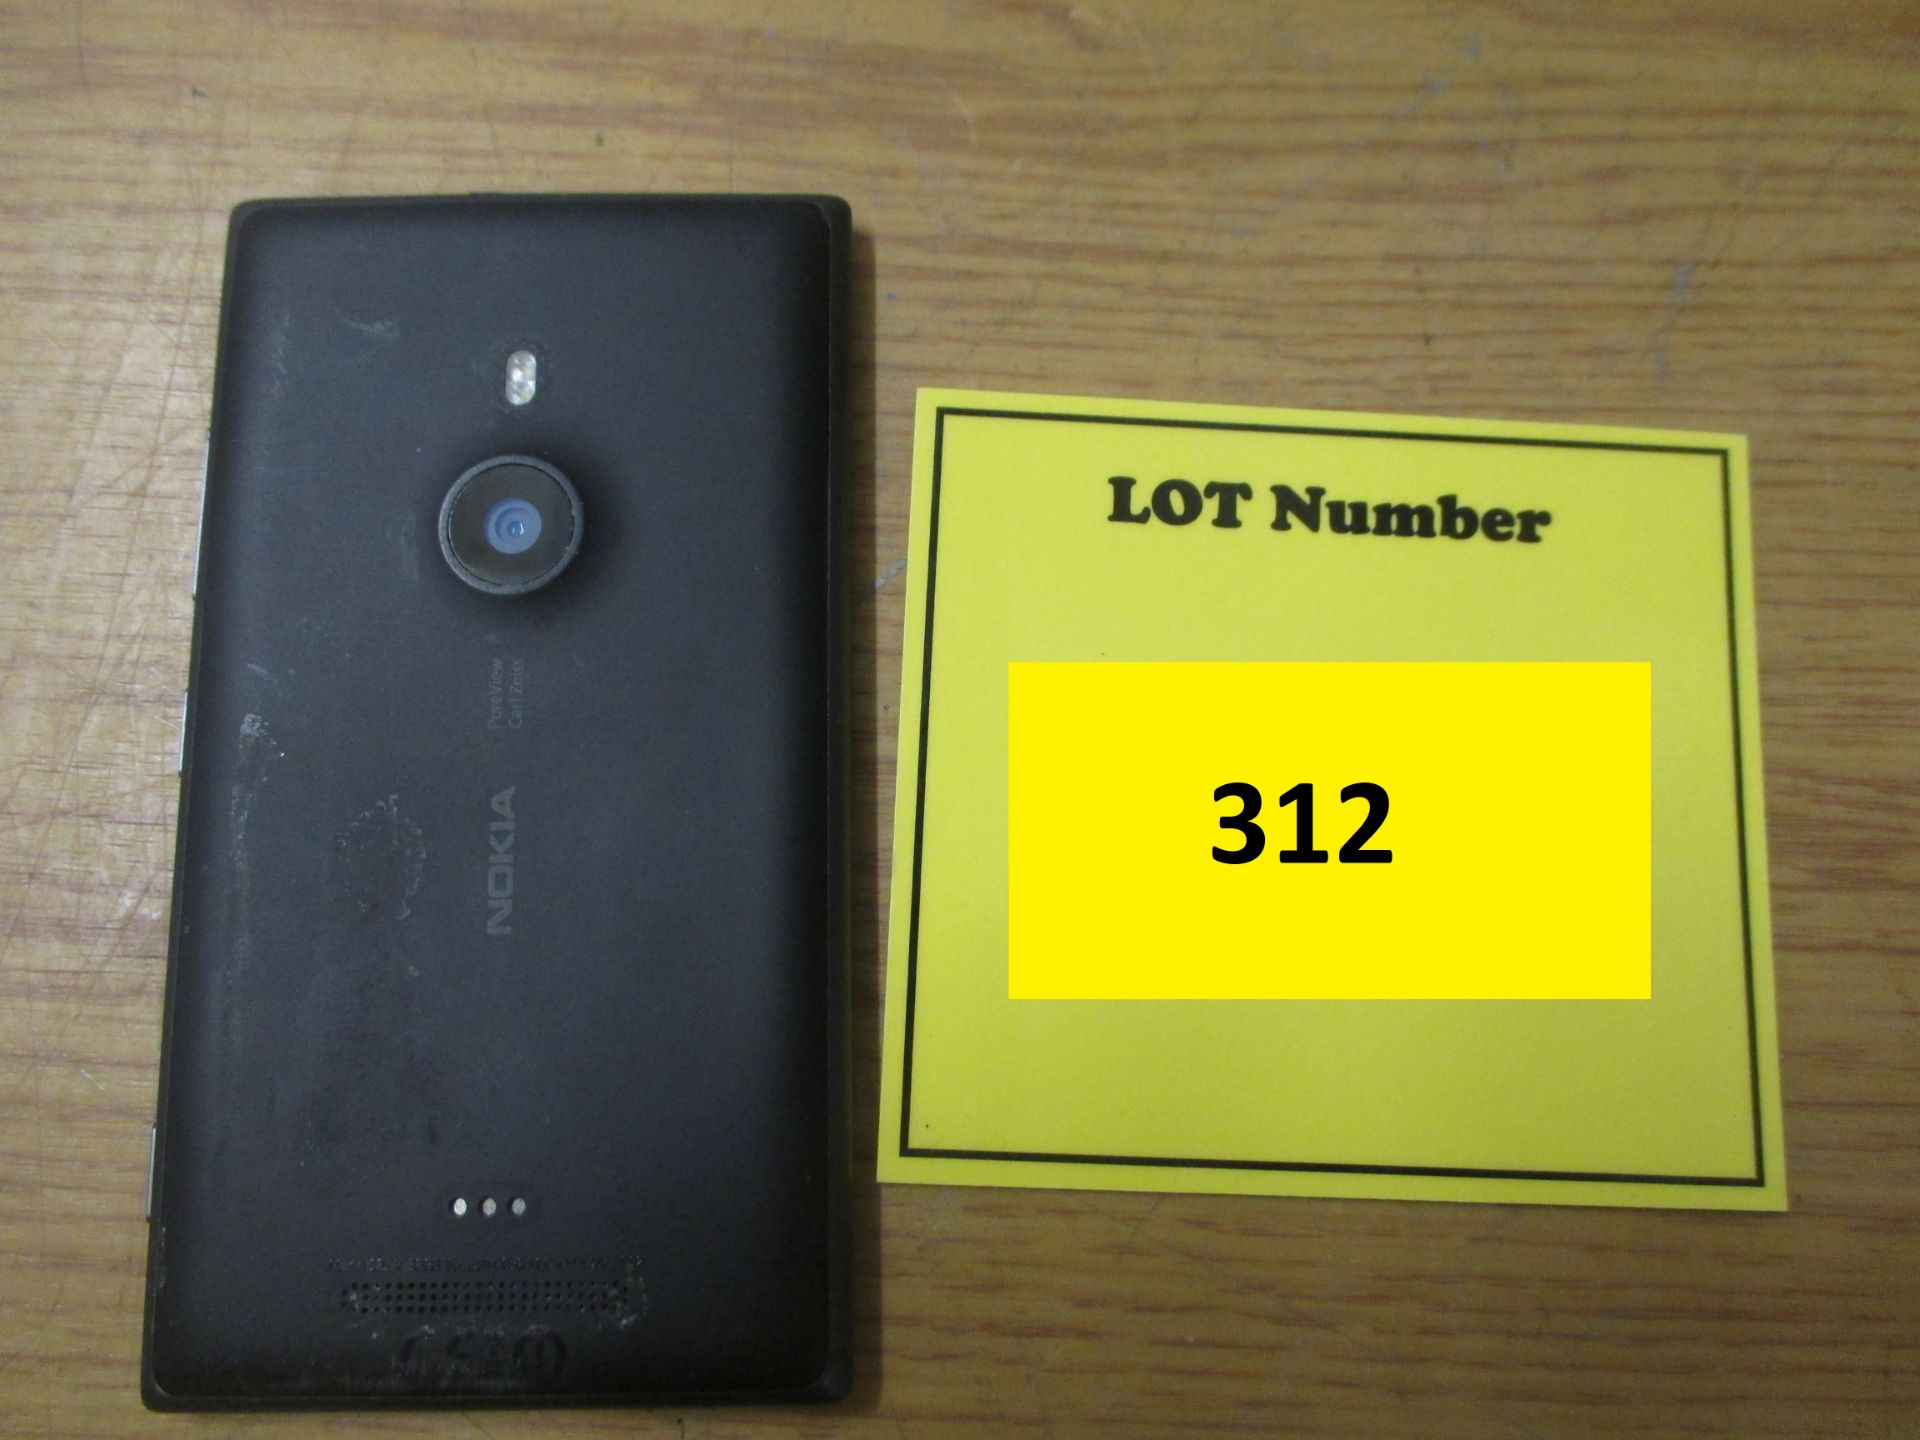 NOKIA LUMIA 925.4 32GB MOBILE SMARTPHONE - Image 2 of 2